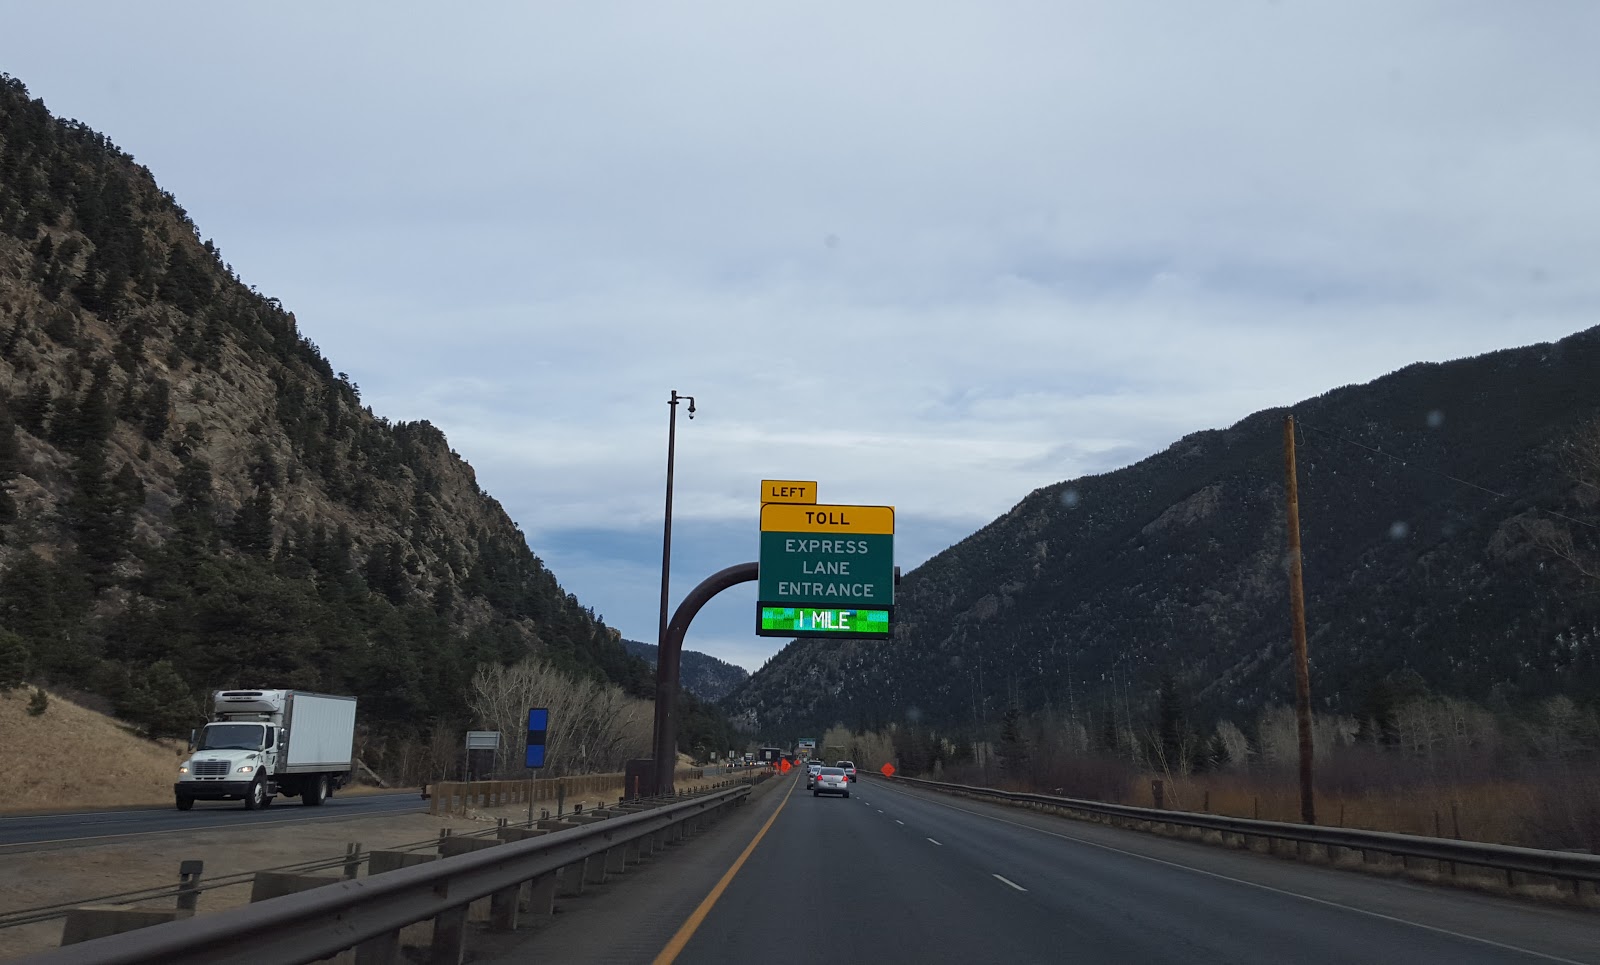 EB I-70 Mountain Express Lane Entry Sign.jpg detail image